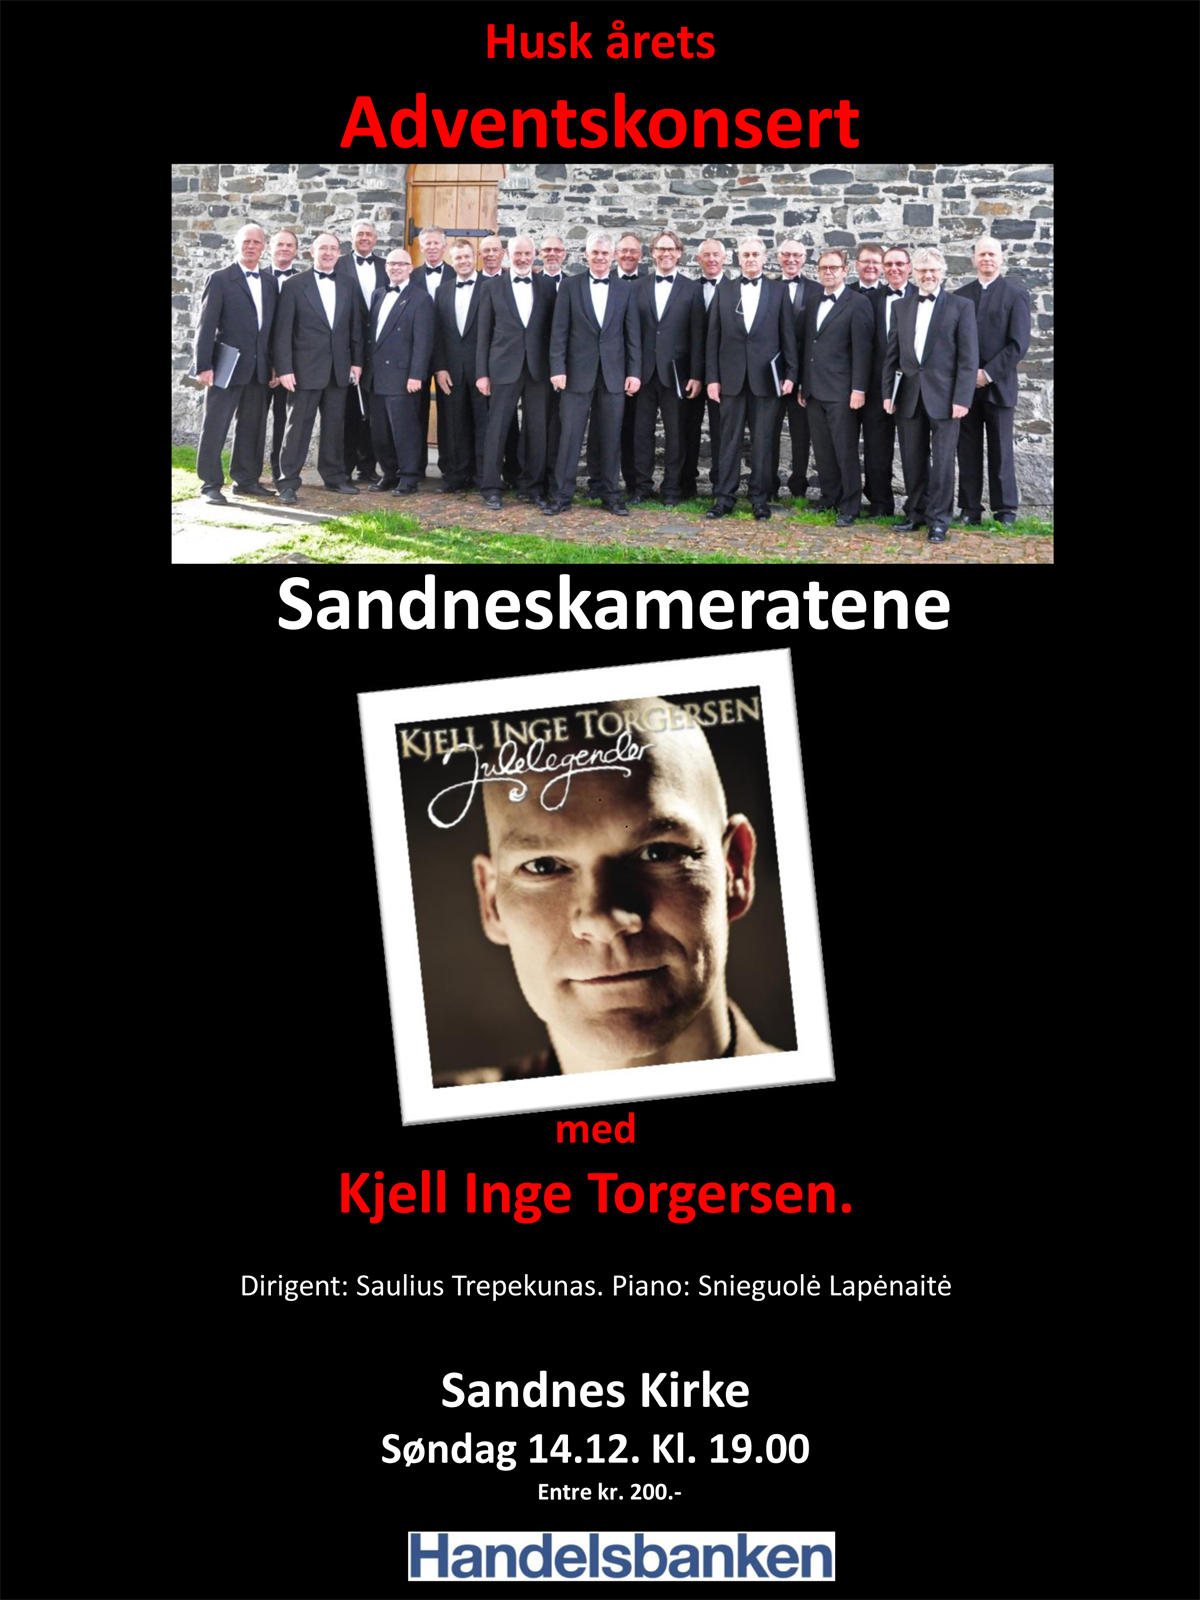 Sandneskameratenes Adventskonsert med Kjell Inge Torgersen